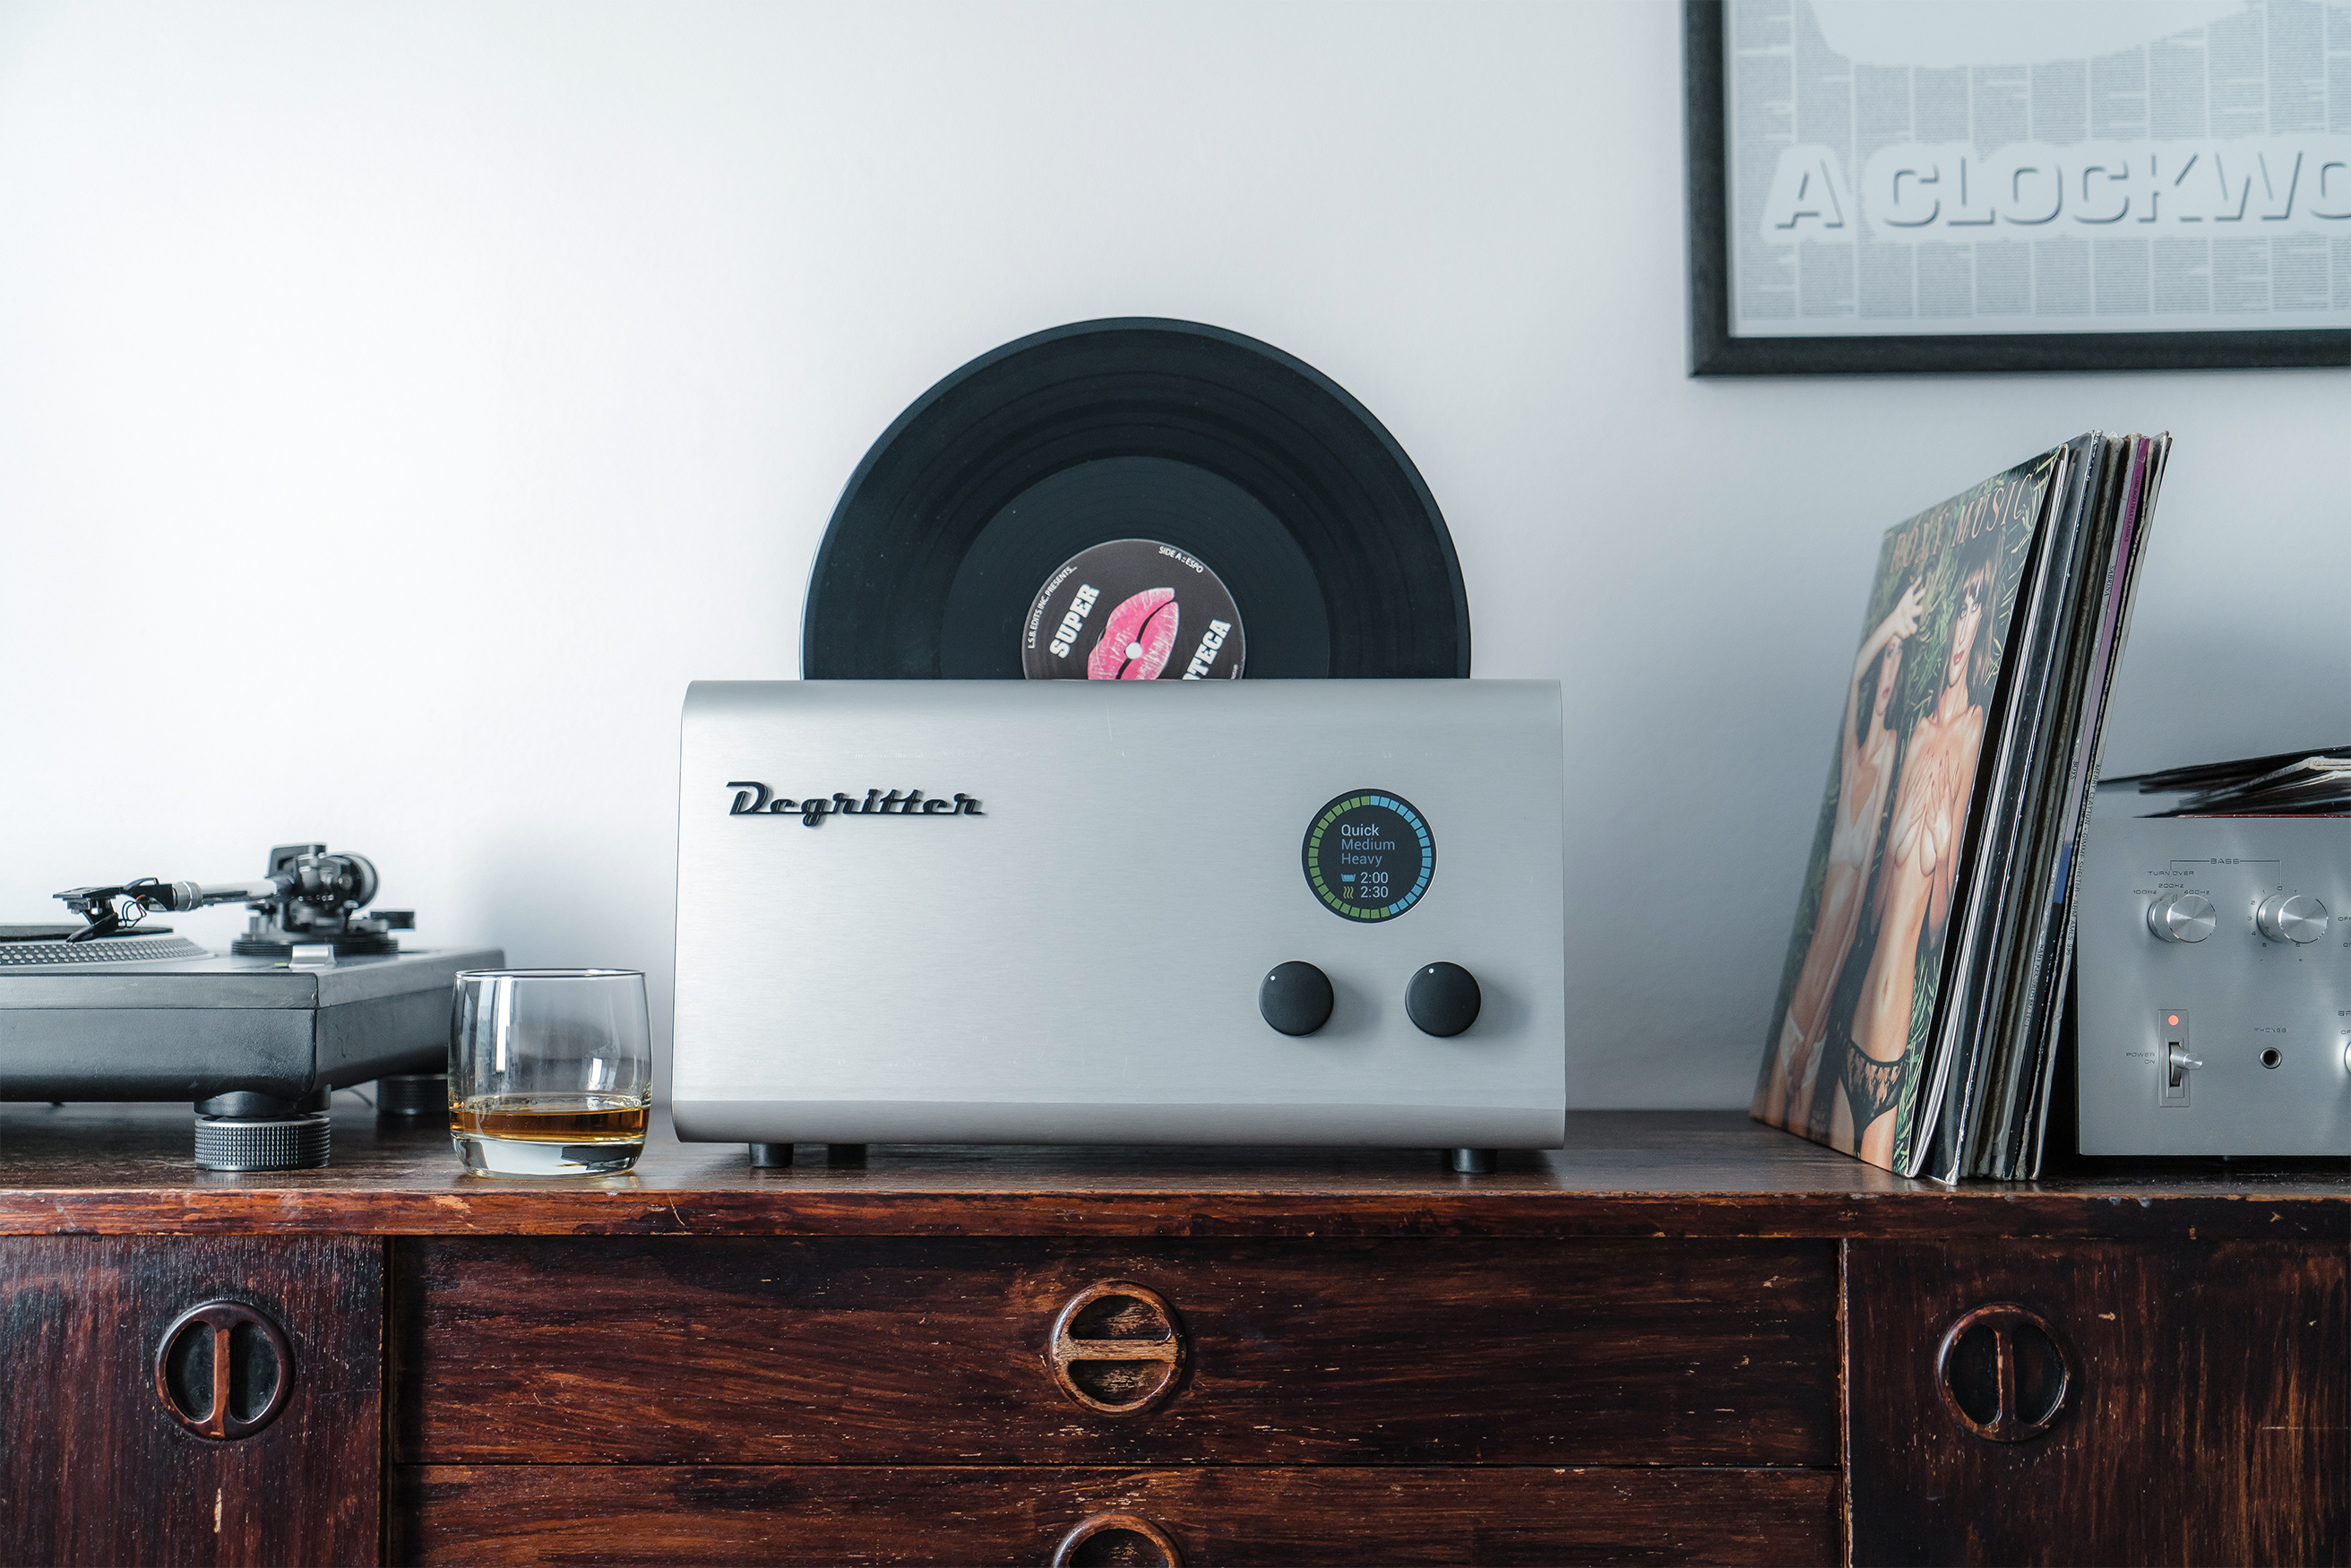 Špičková pračka vinylů se jmenuje Degritter